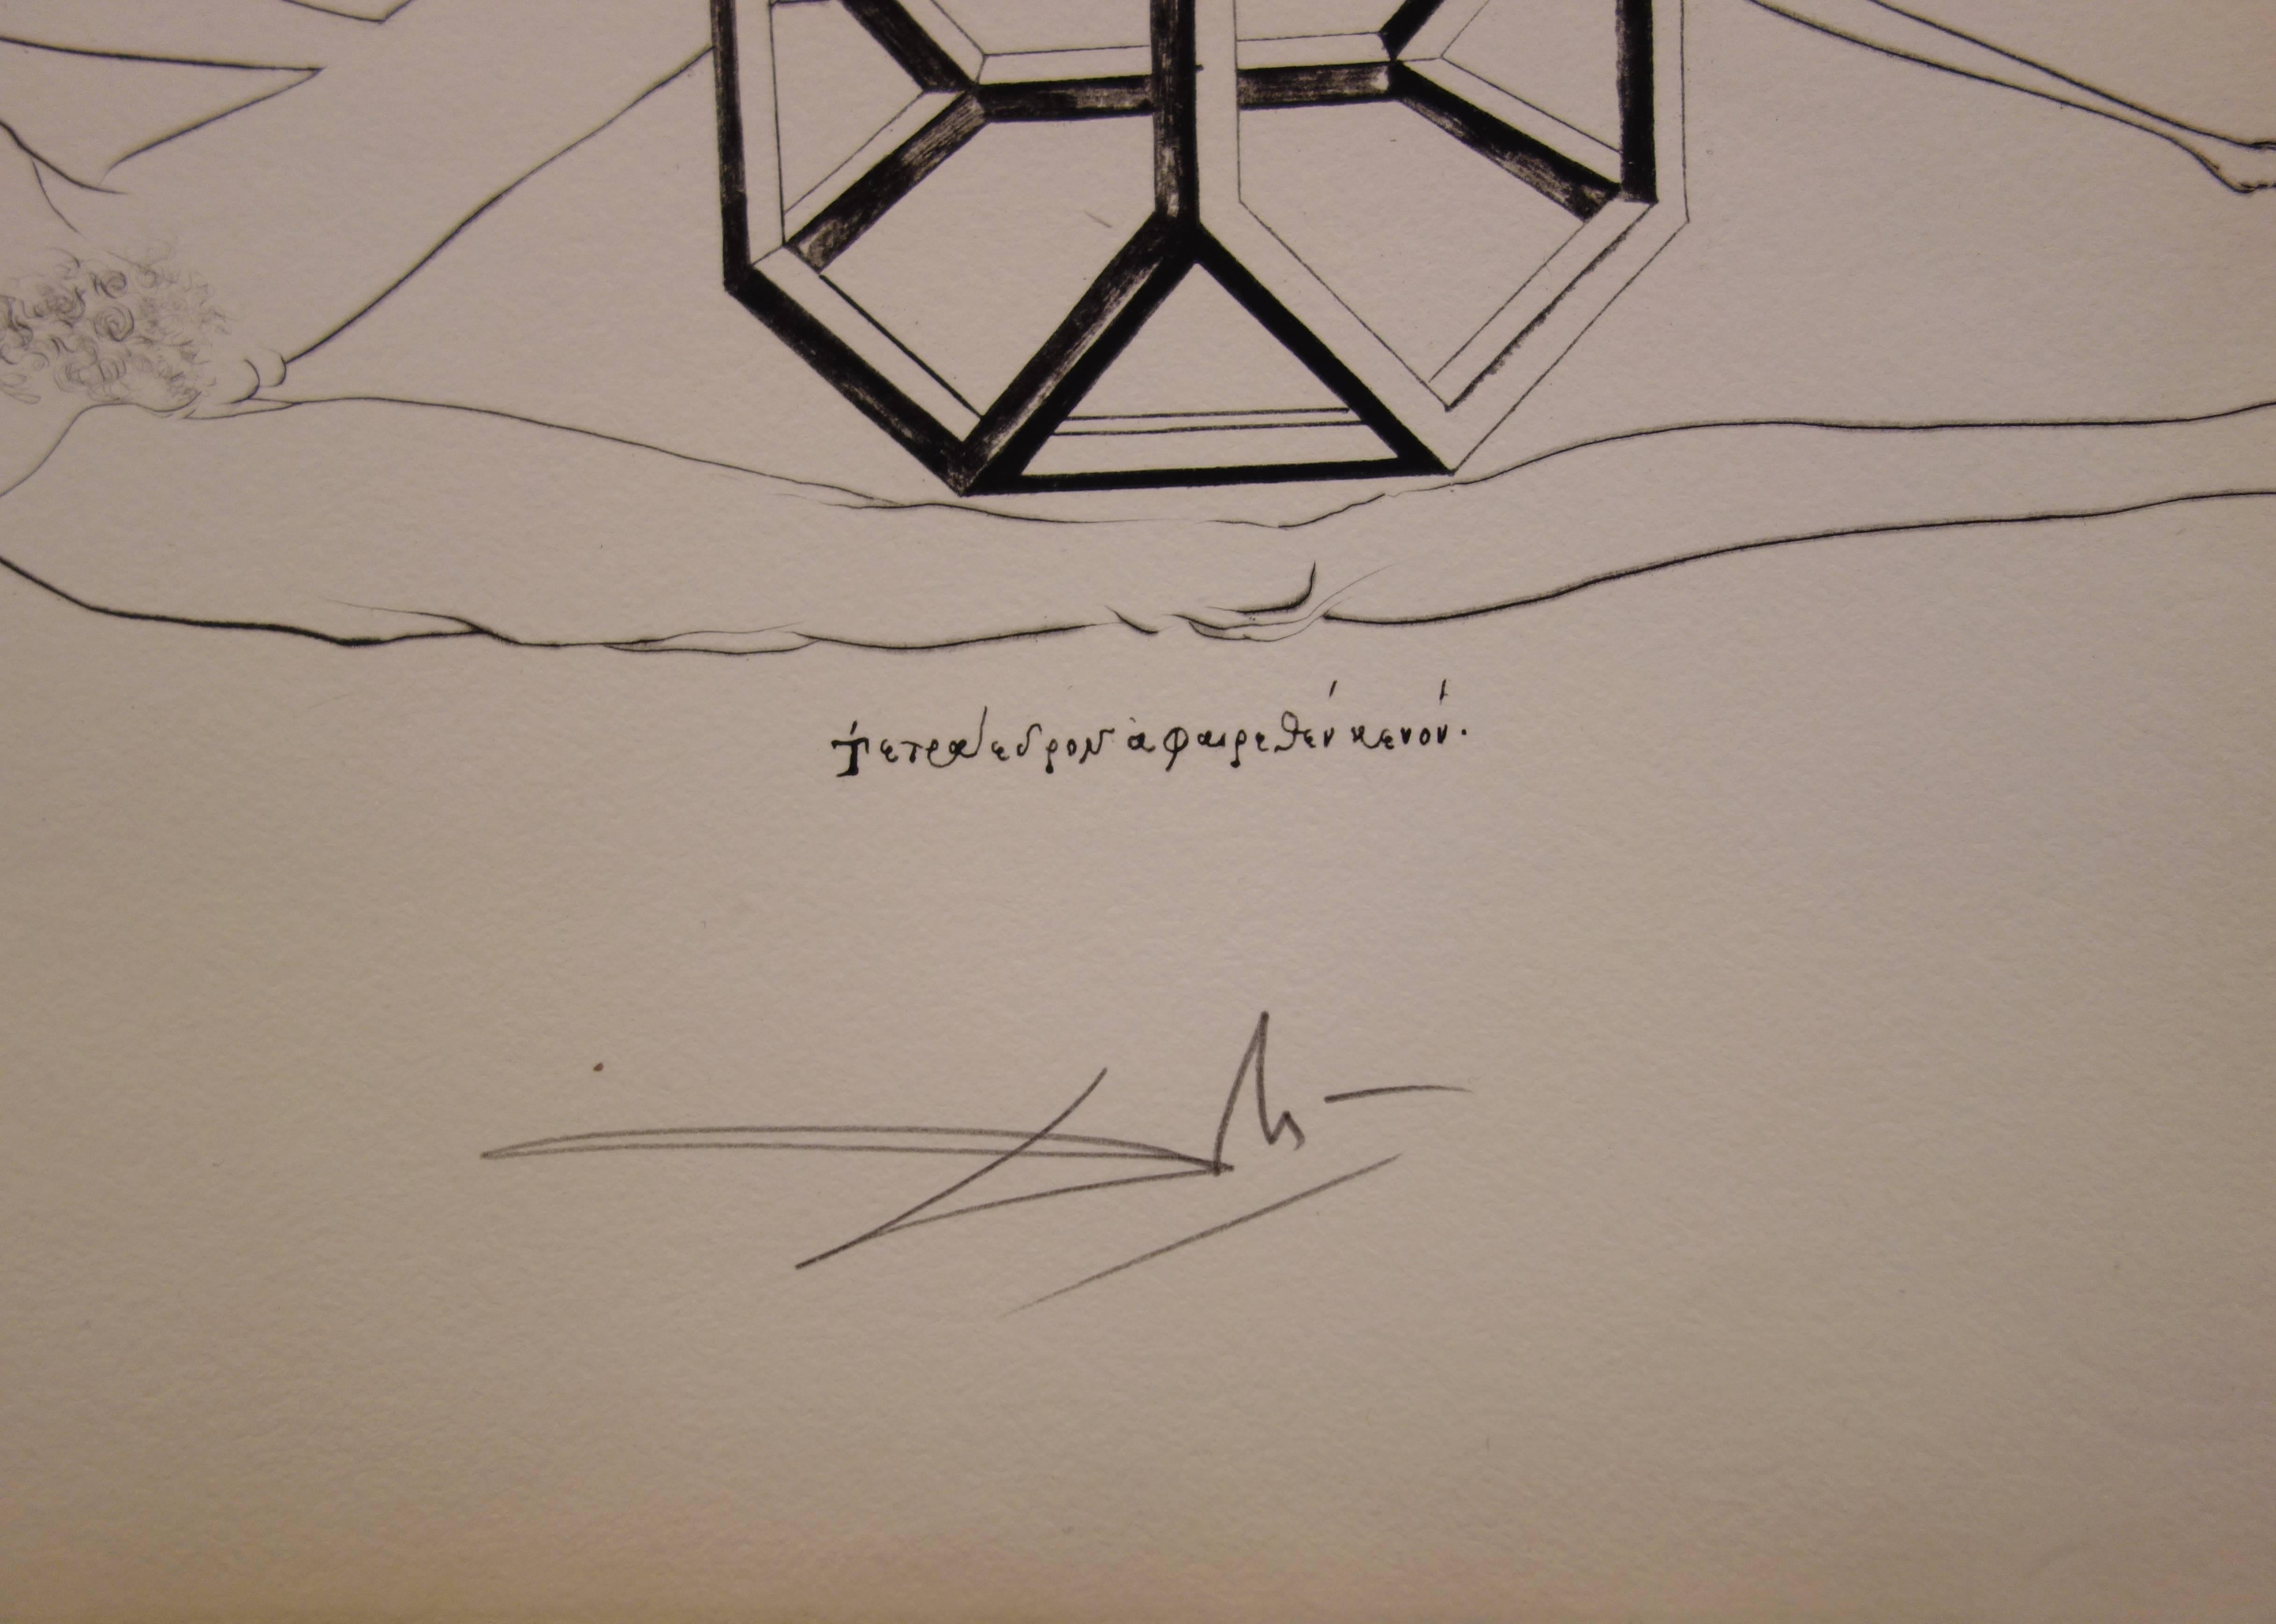 L'immortalité tétraédrique du cube - Original etching - 1973 - Brown Figurative Print by Salvador Dalí